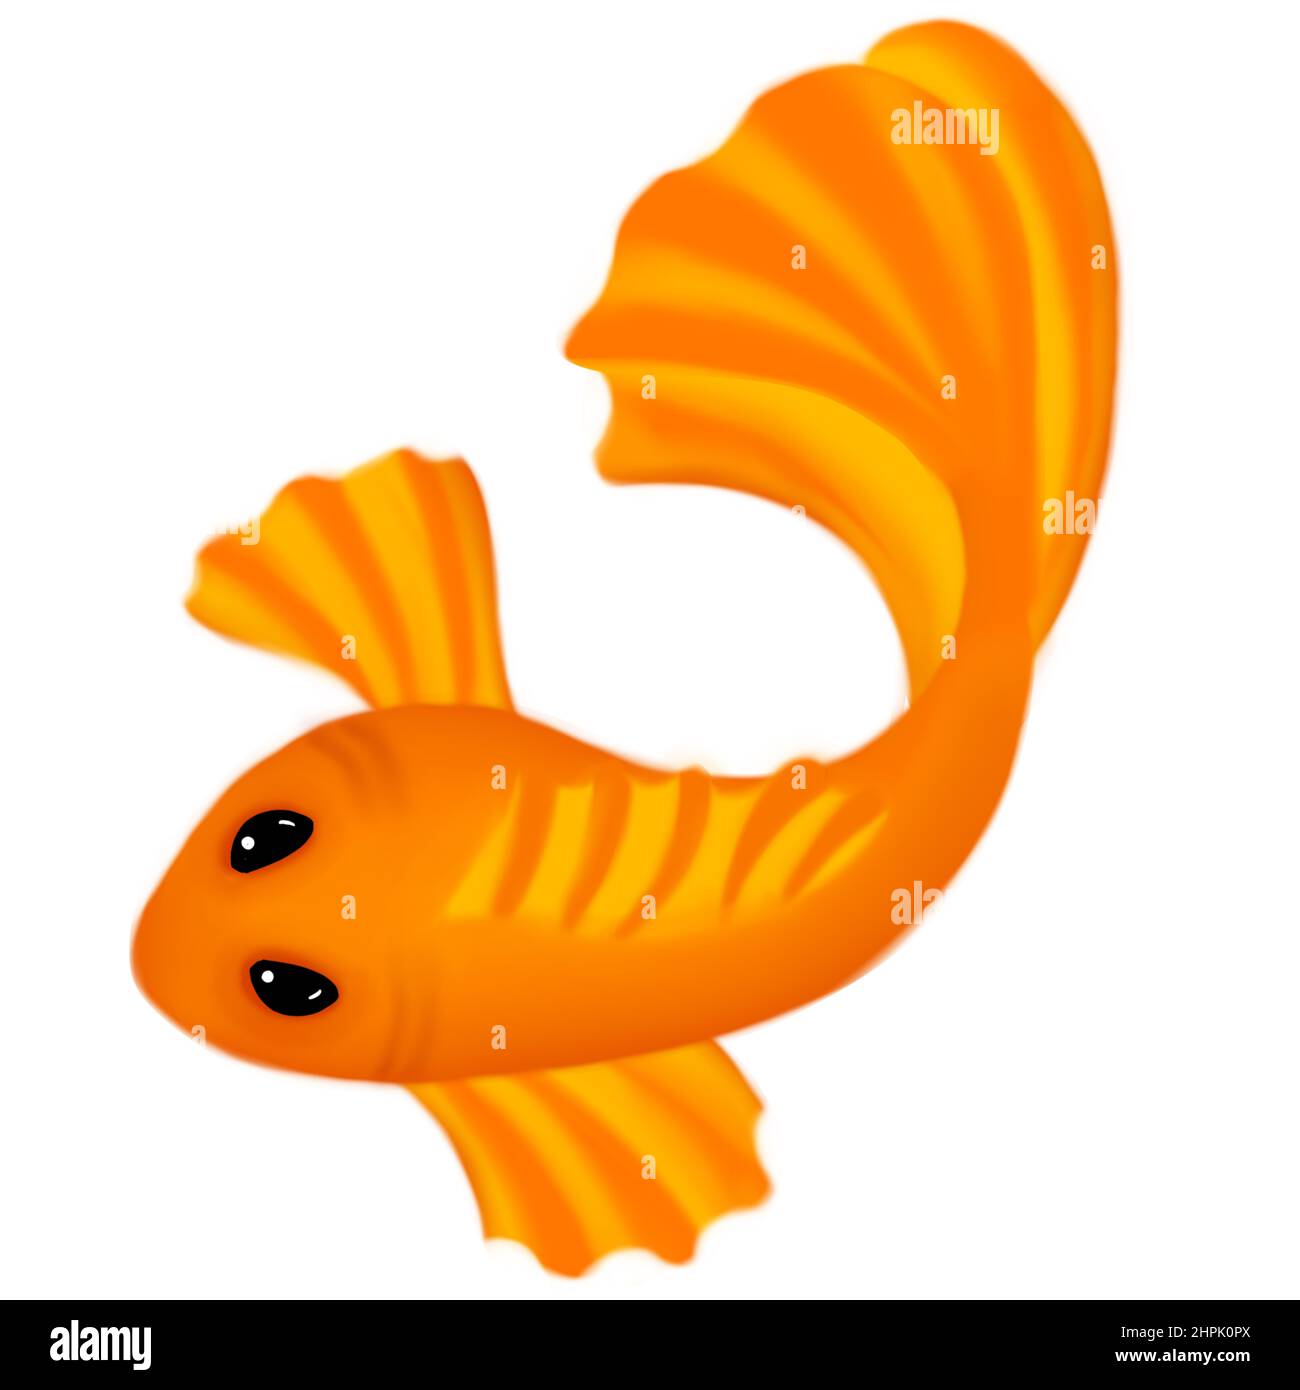 Illustration of a Orange Goldfish Fish on White Background Cartoon Style Stock Photo